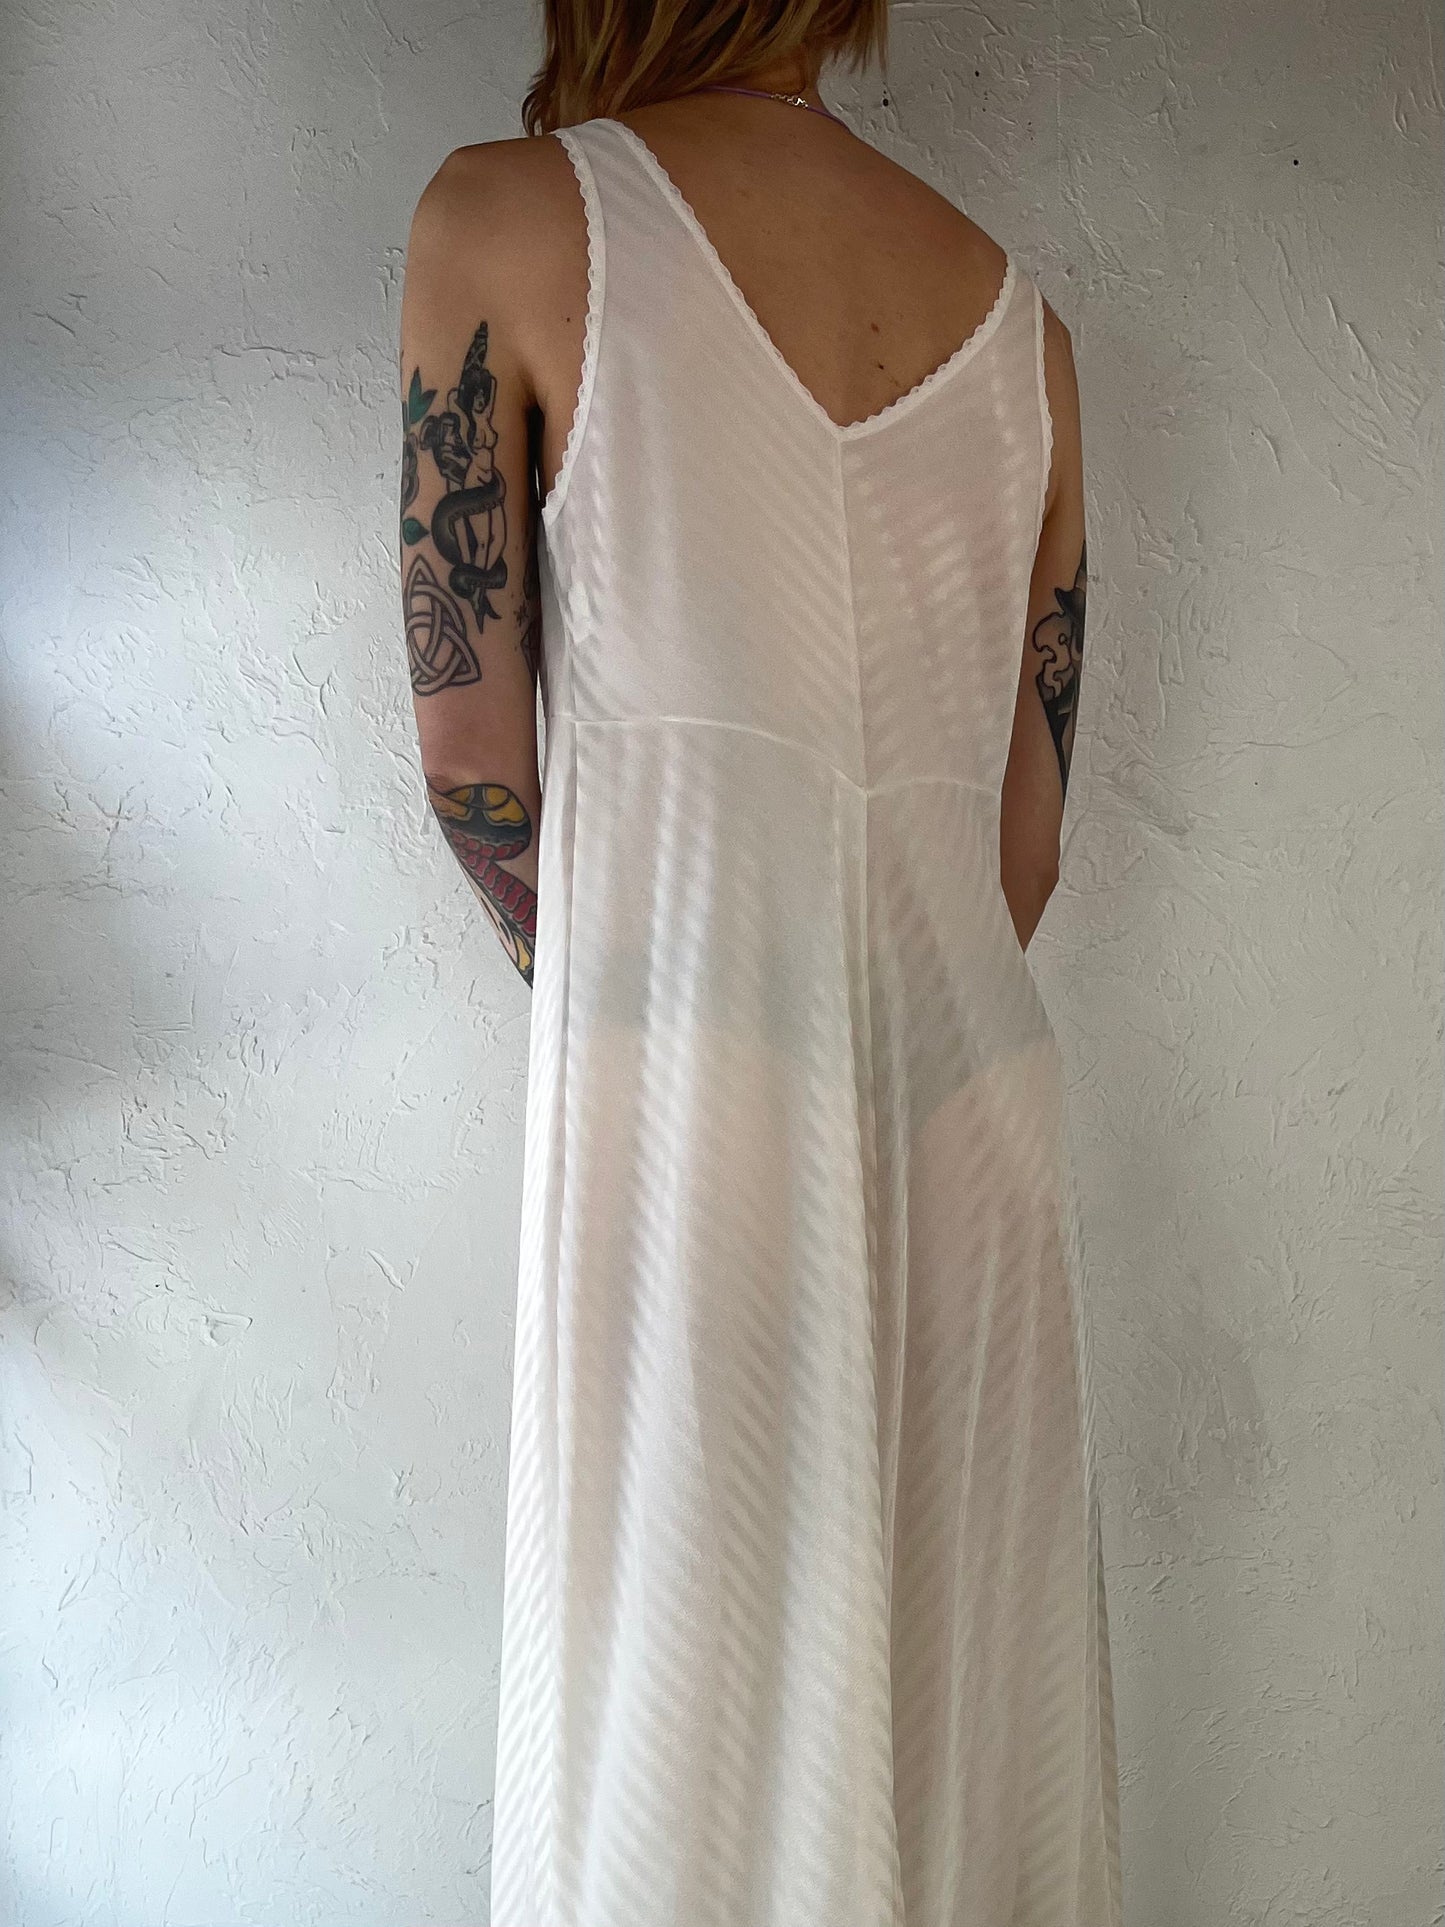 90s 'Kayser' White Nylon Slip Dress / Medium